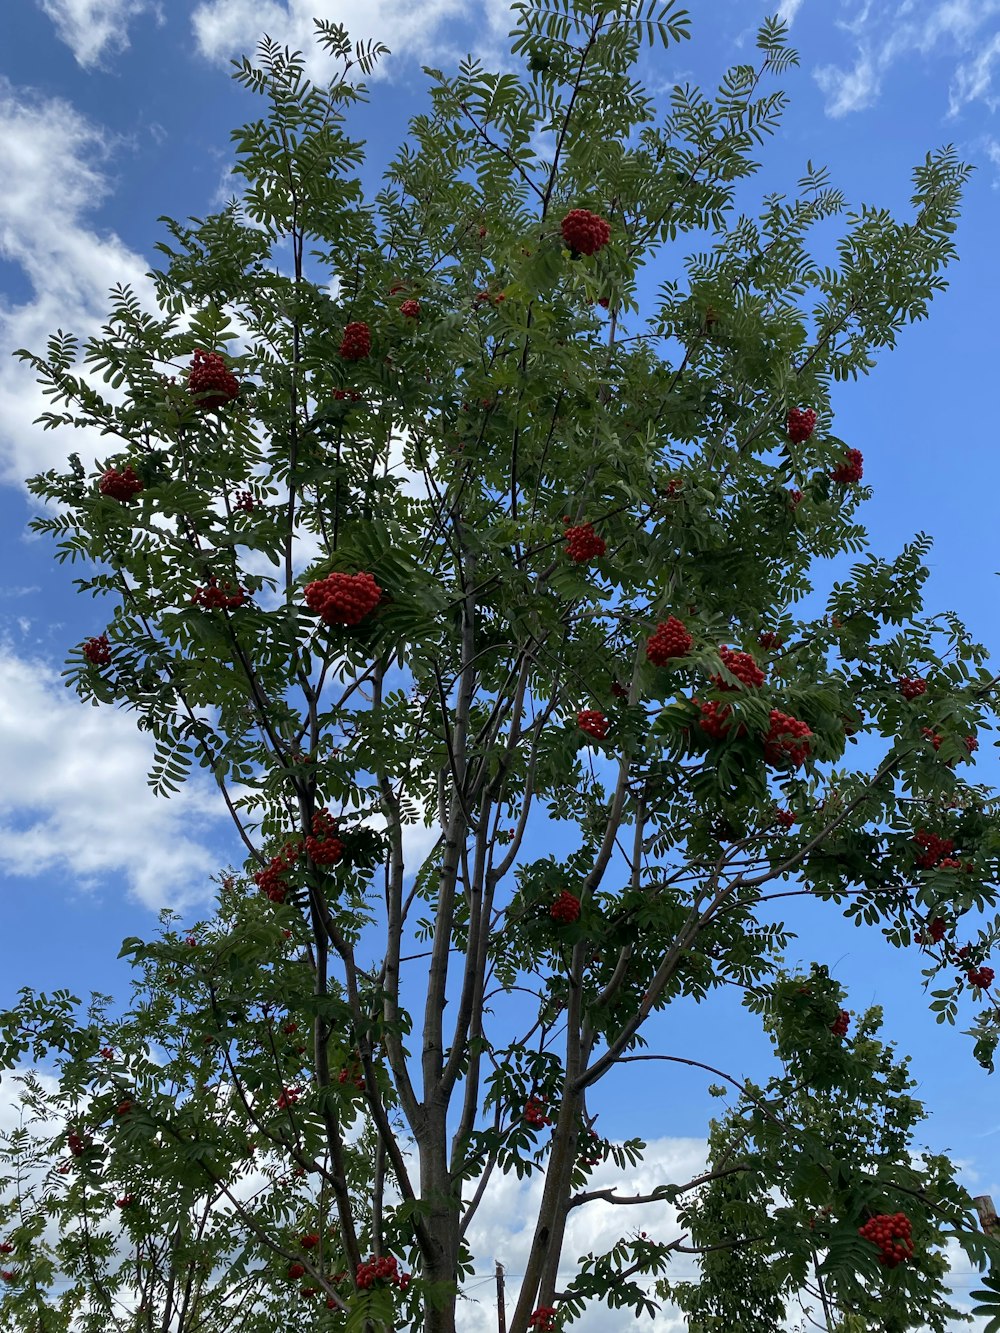 붉은 꽃이 많이 피는 나무